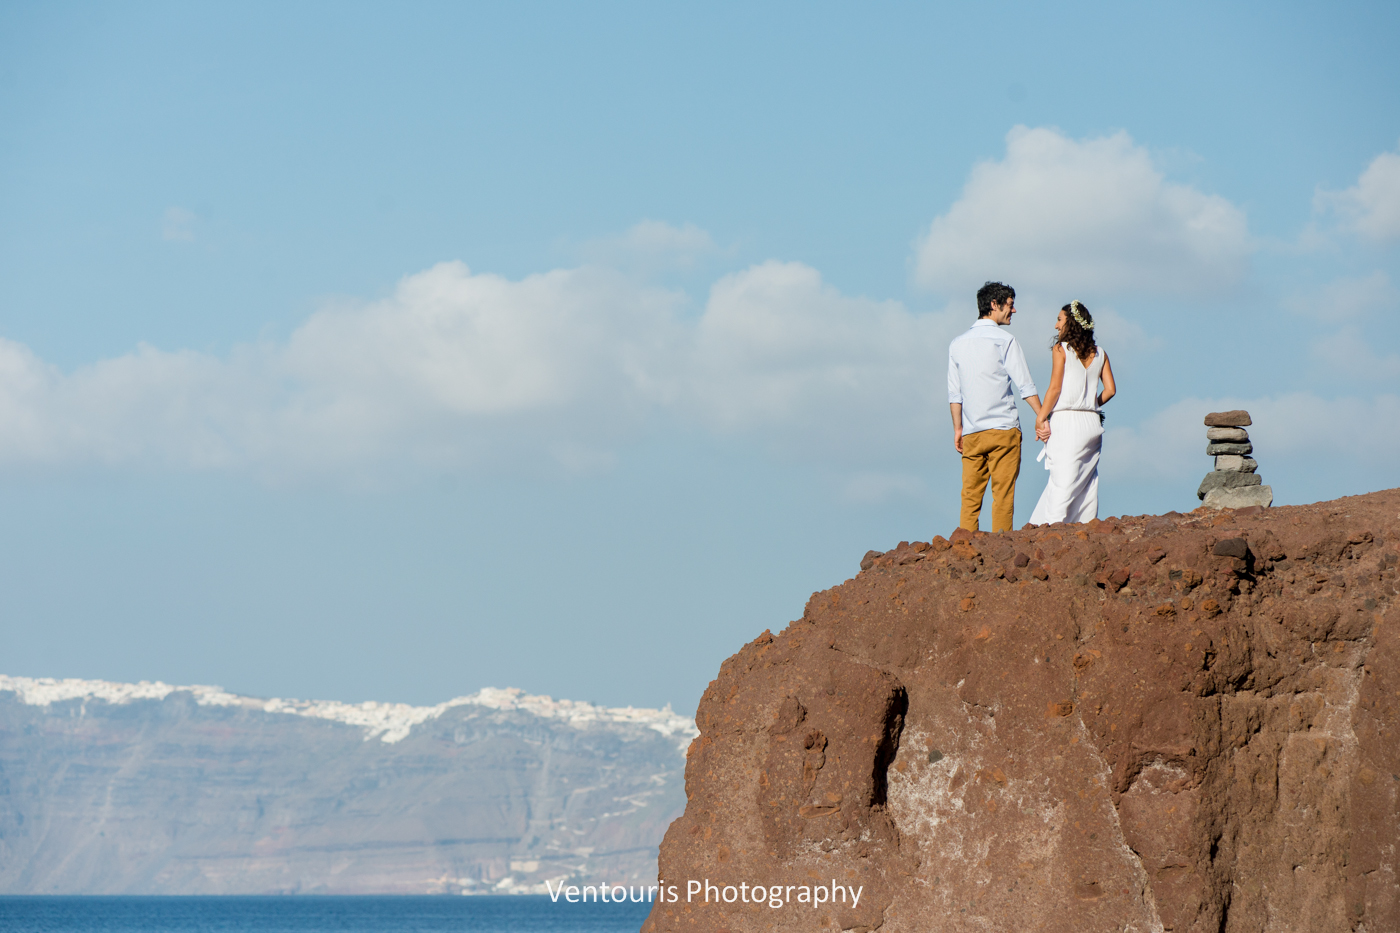 Beach wedding in Santorini